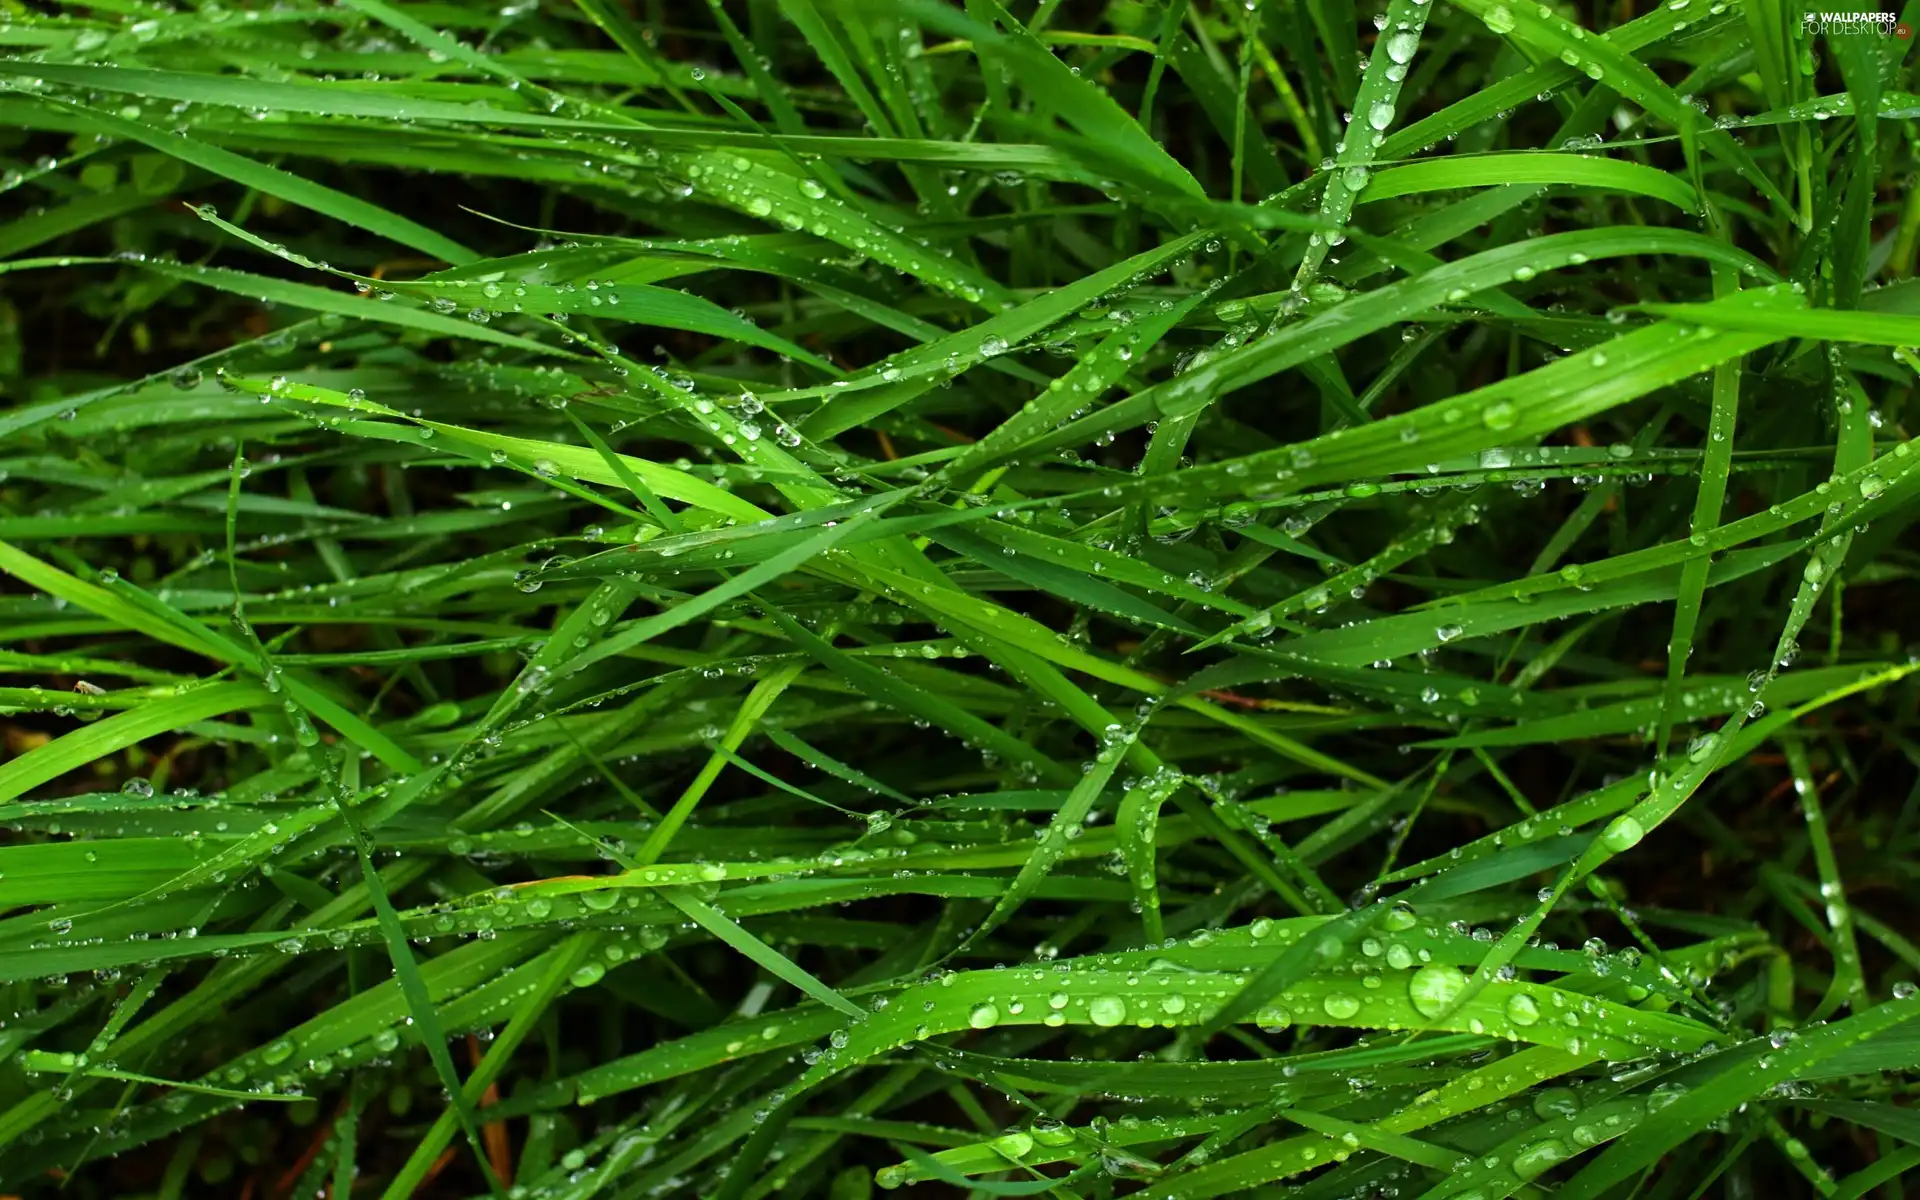 green ones, grass, dew, blades